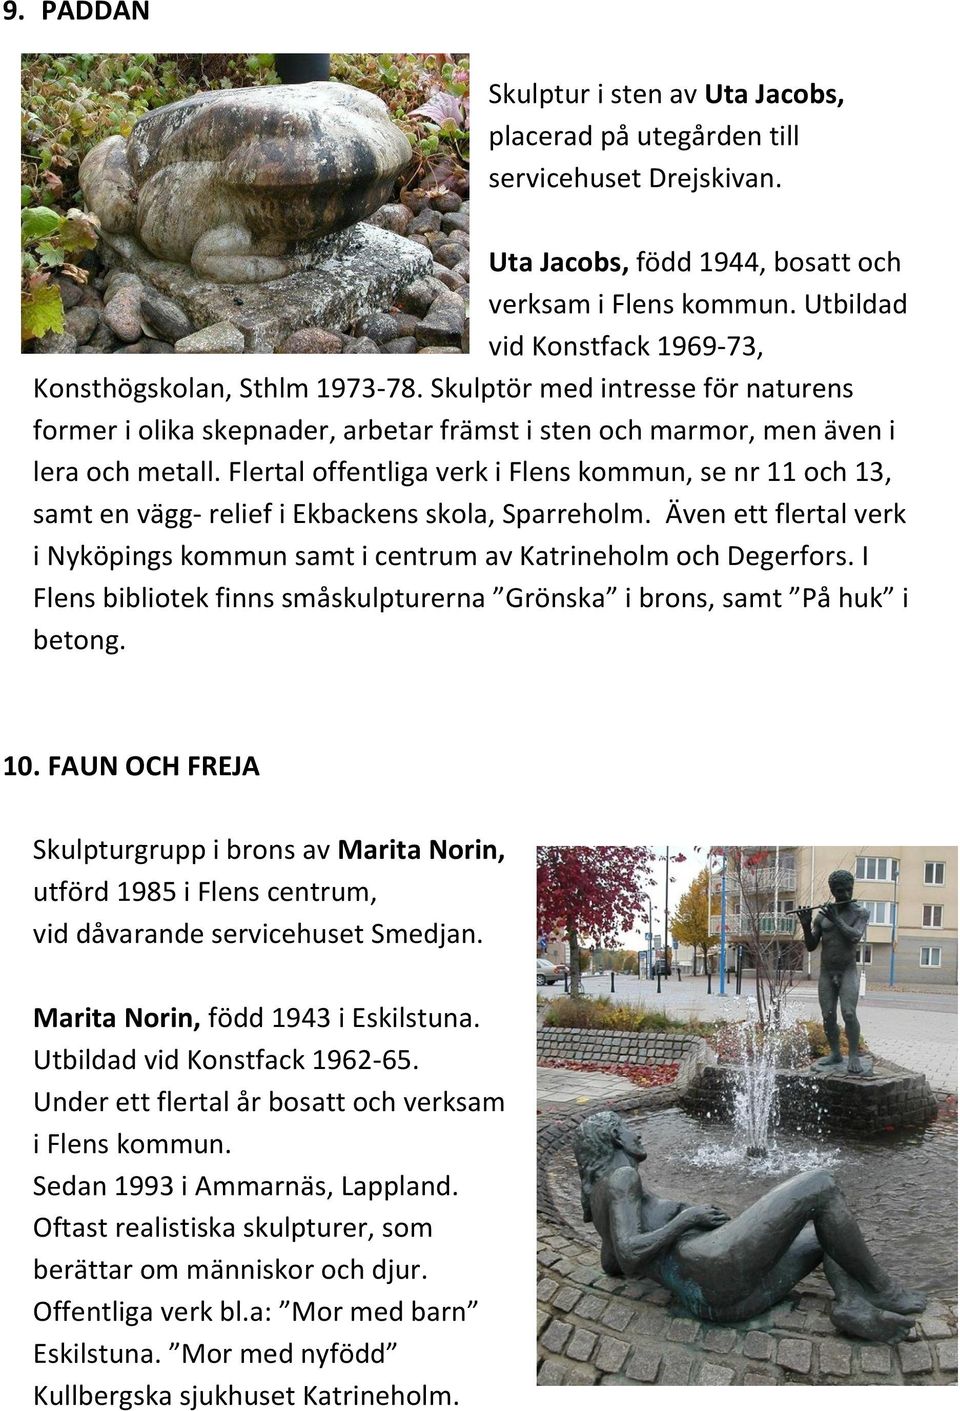 Flertal offentliga verk i Flens kommun, se nr 11 och 13, samt en vägg- relief i Ekbackens skola, Sparreholm. Även ett flertal verk i Nyköpings kommun samt i centrum av Katrineholm och Degerfors.